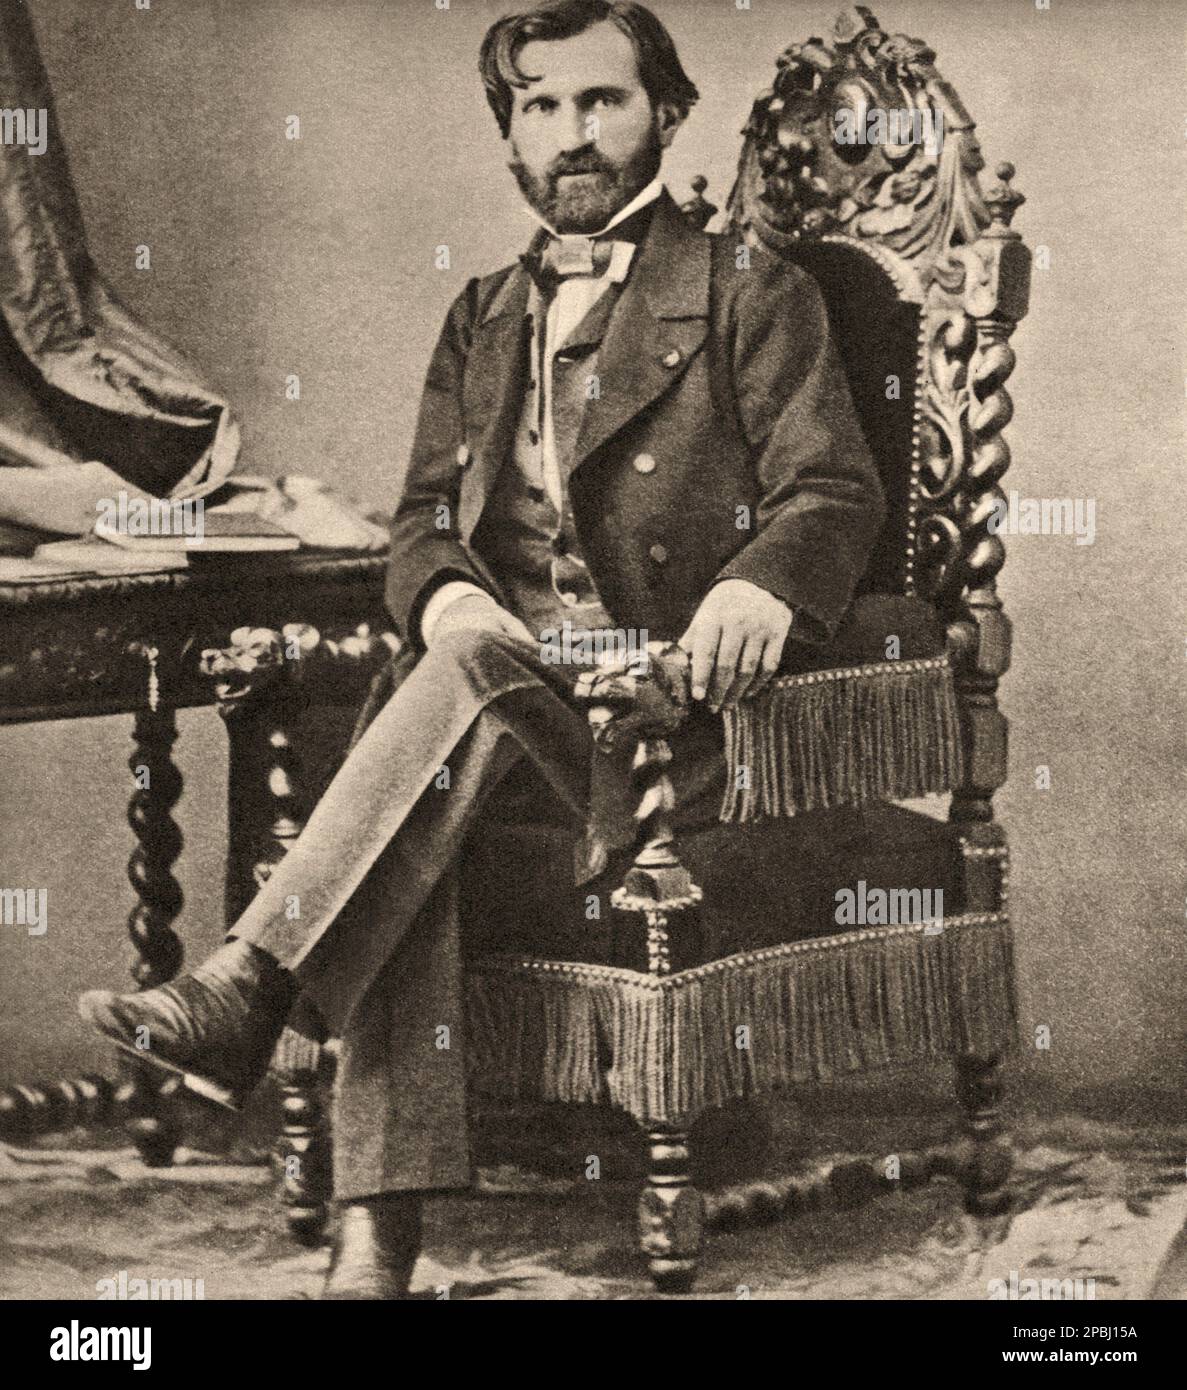 1859 , Parigi , Francia : il celebre compositore italiano GIUSEPPE VERDI ( 1813 - 1901 ). FOTO DI E. DIDERI - COMPOSITORE - OPERA LIRICA - CLASSICA - CLASSICA - RITRATTO - RITRATTO - MUSICALE - MUSICA - BARBA - BARBA - BARBA - FIOCCO - FIOCCO - CRAVATTA - CRAVATTA - PAPILLON ------- ARCHIVIO GBB Foto Stock